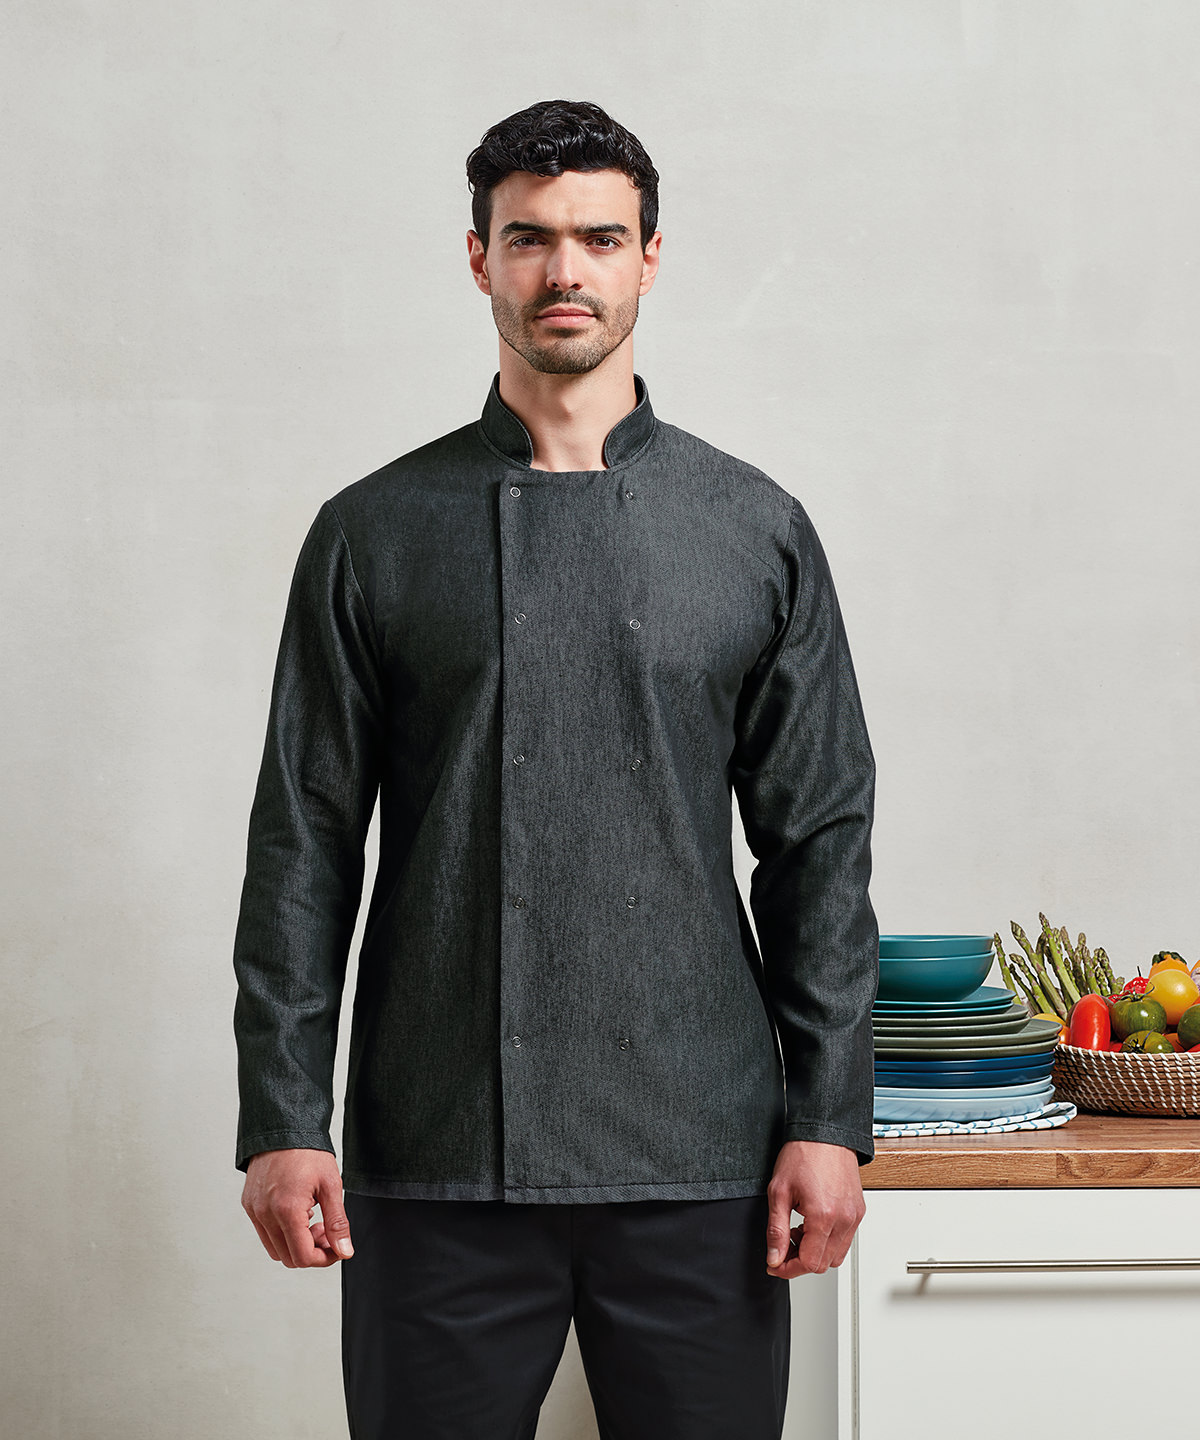 denim chef jackets-united workwear-pr660